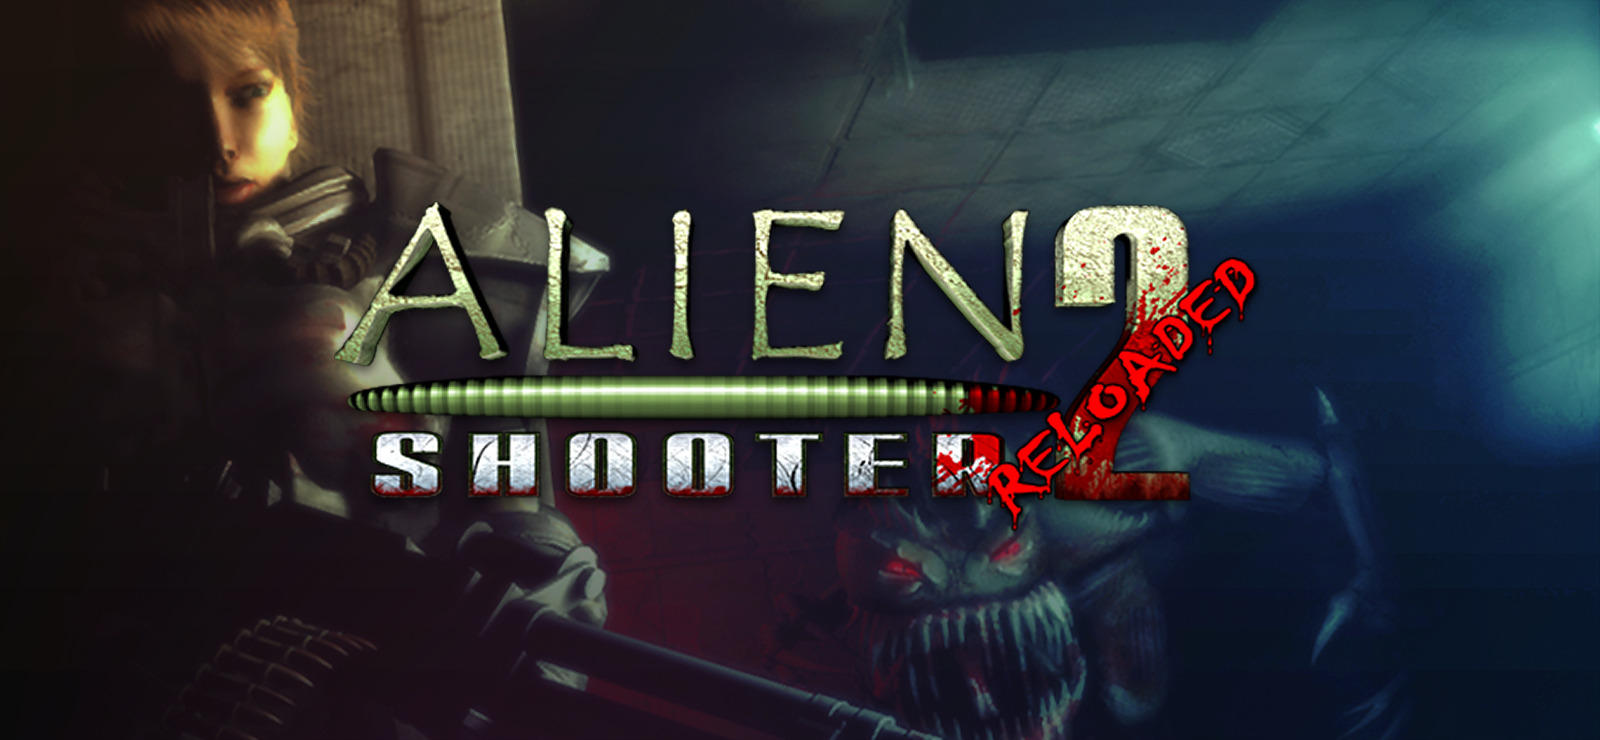 Alien Shooter 2 Reloaded on GOG